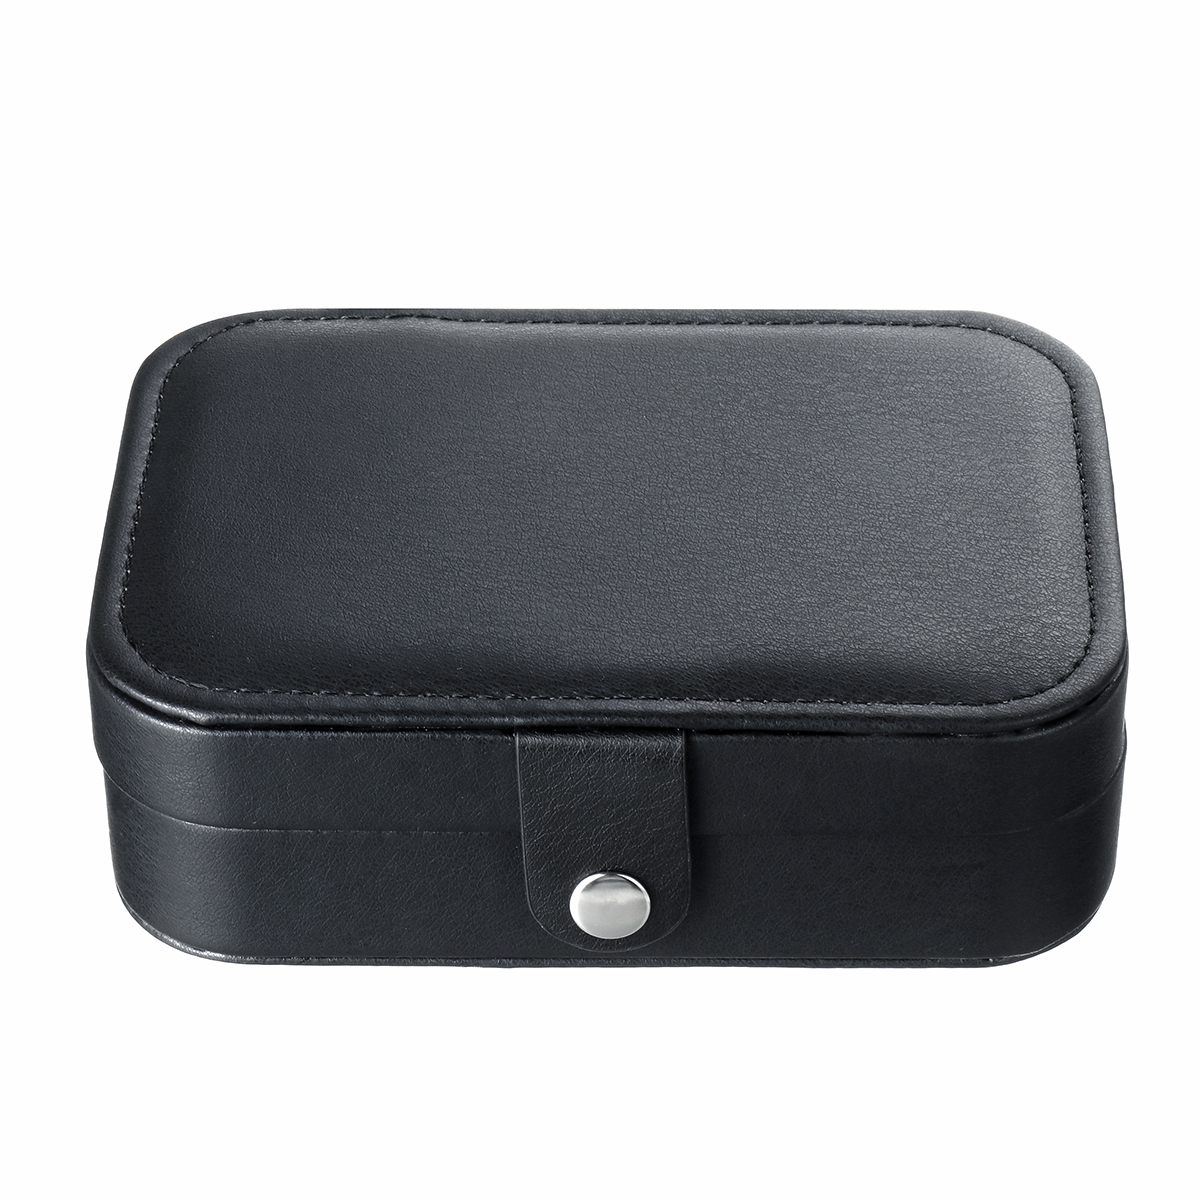 Travel-Portable-Leather-Jewelry-Watch-Storage-Watch-Box-Case-Organizer-1672485-11